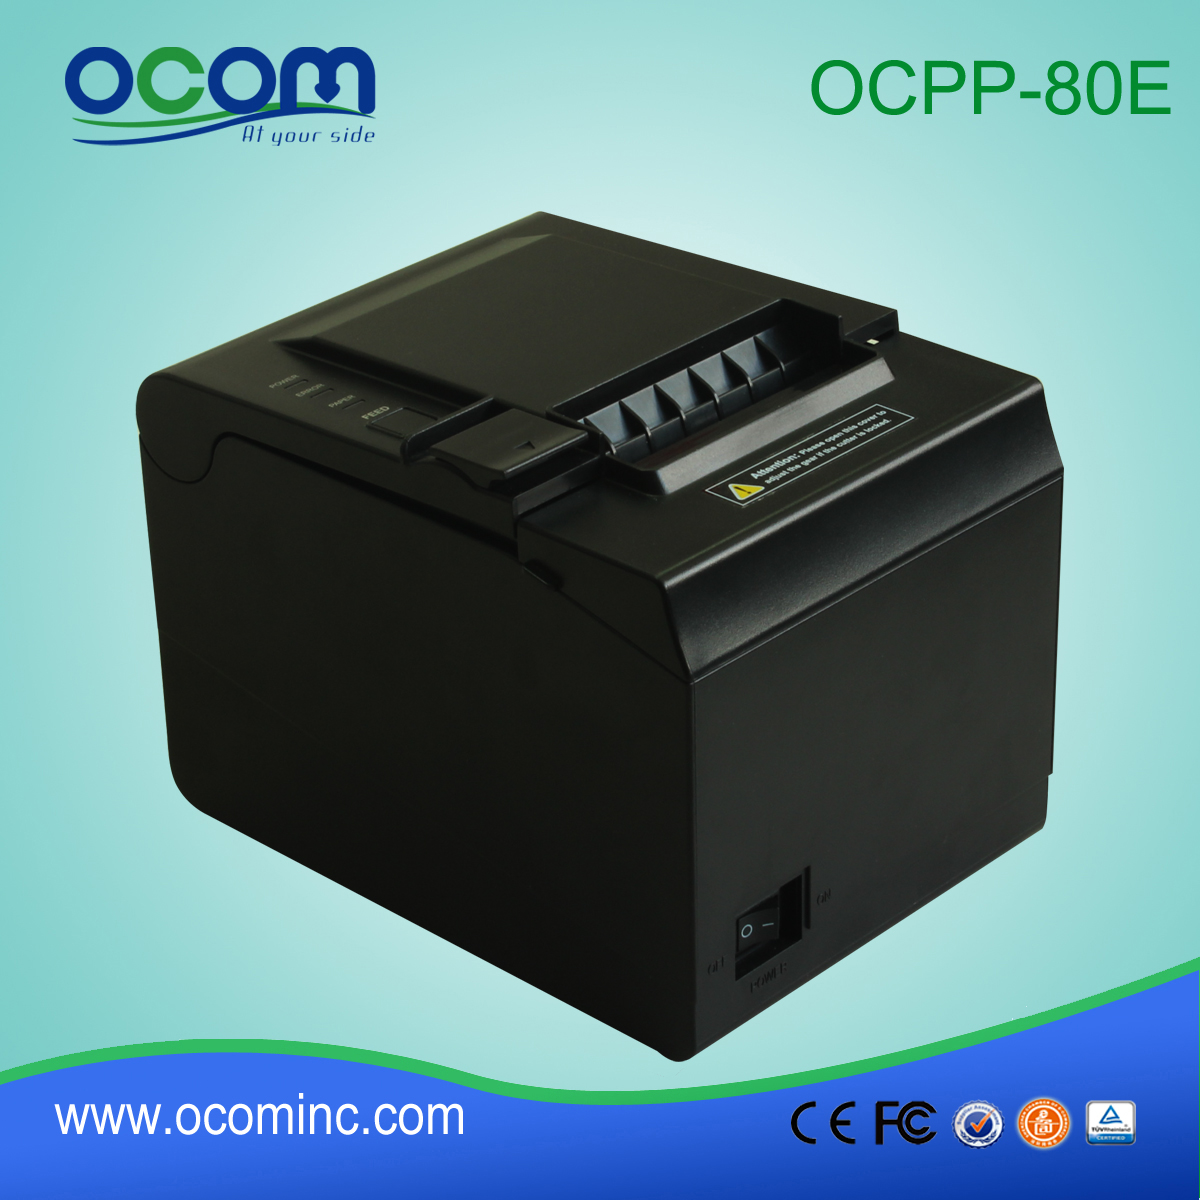 OCPP-80E coupeur automatique de haute qualité imprimante 80mm pos thermique bon marché